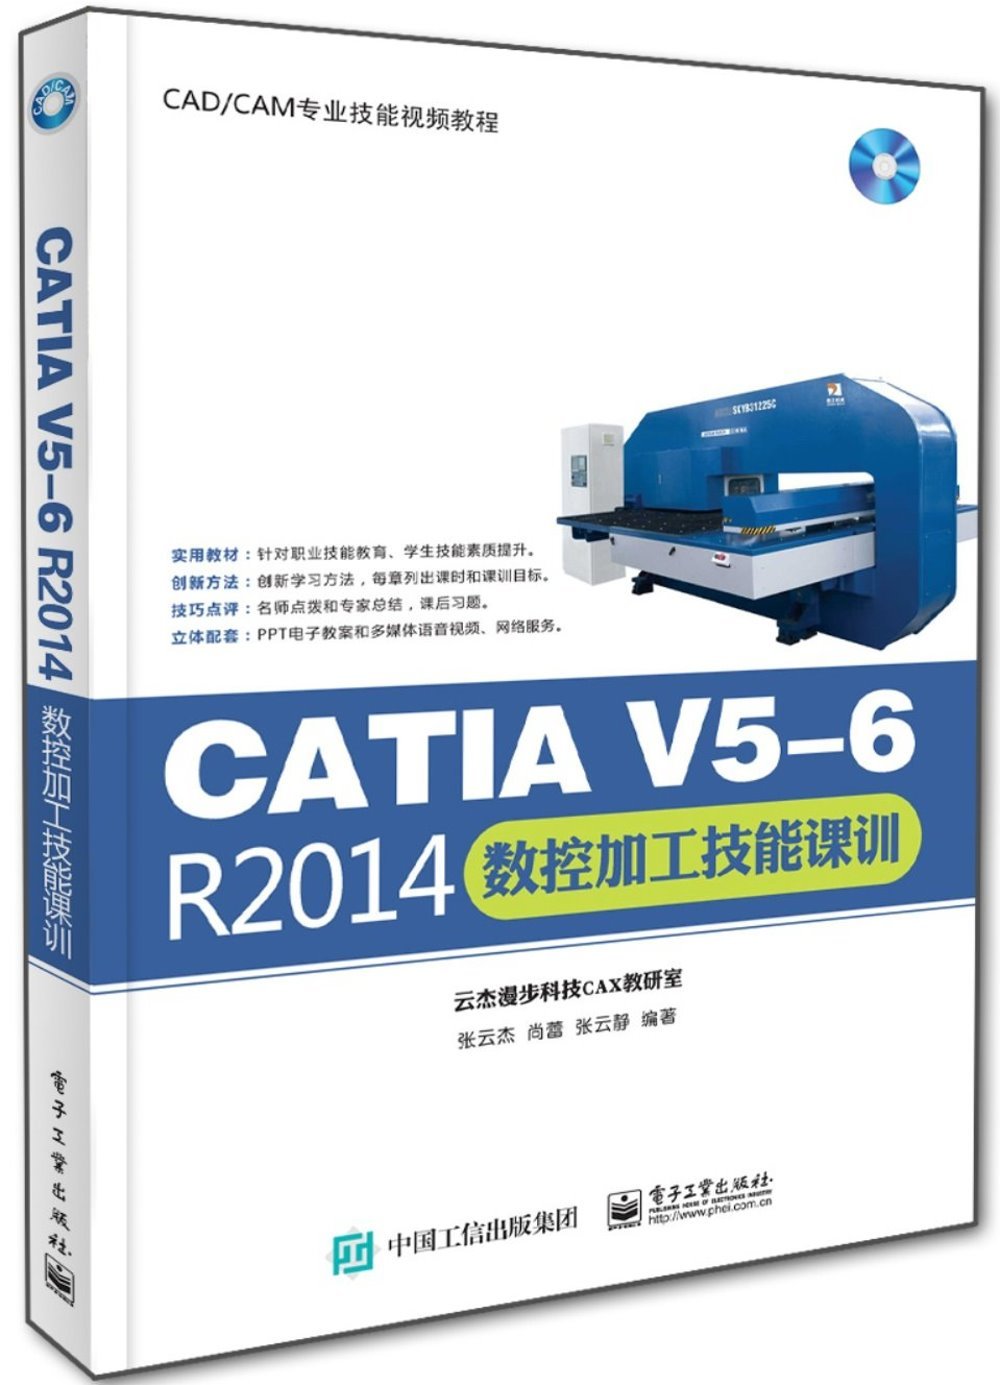 CATIA V5-6 R2014數控加工技能課訓